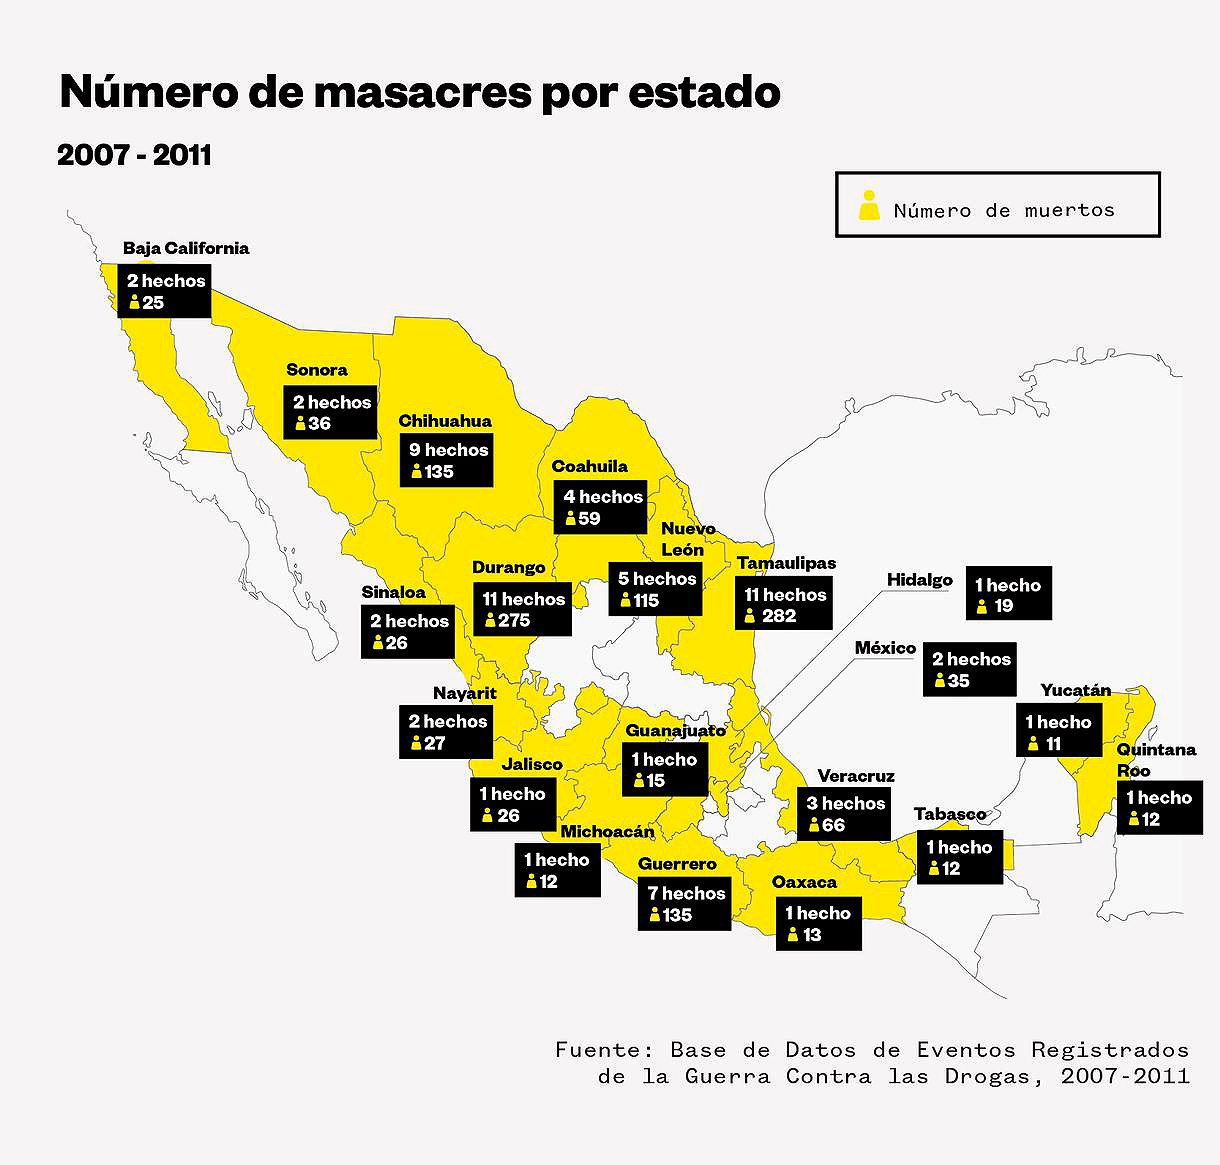 Número de masacres por estado © Olivia Vázques Herrera